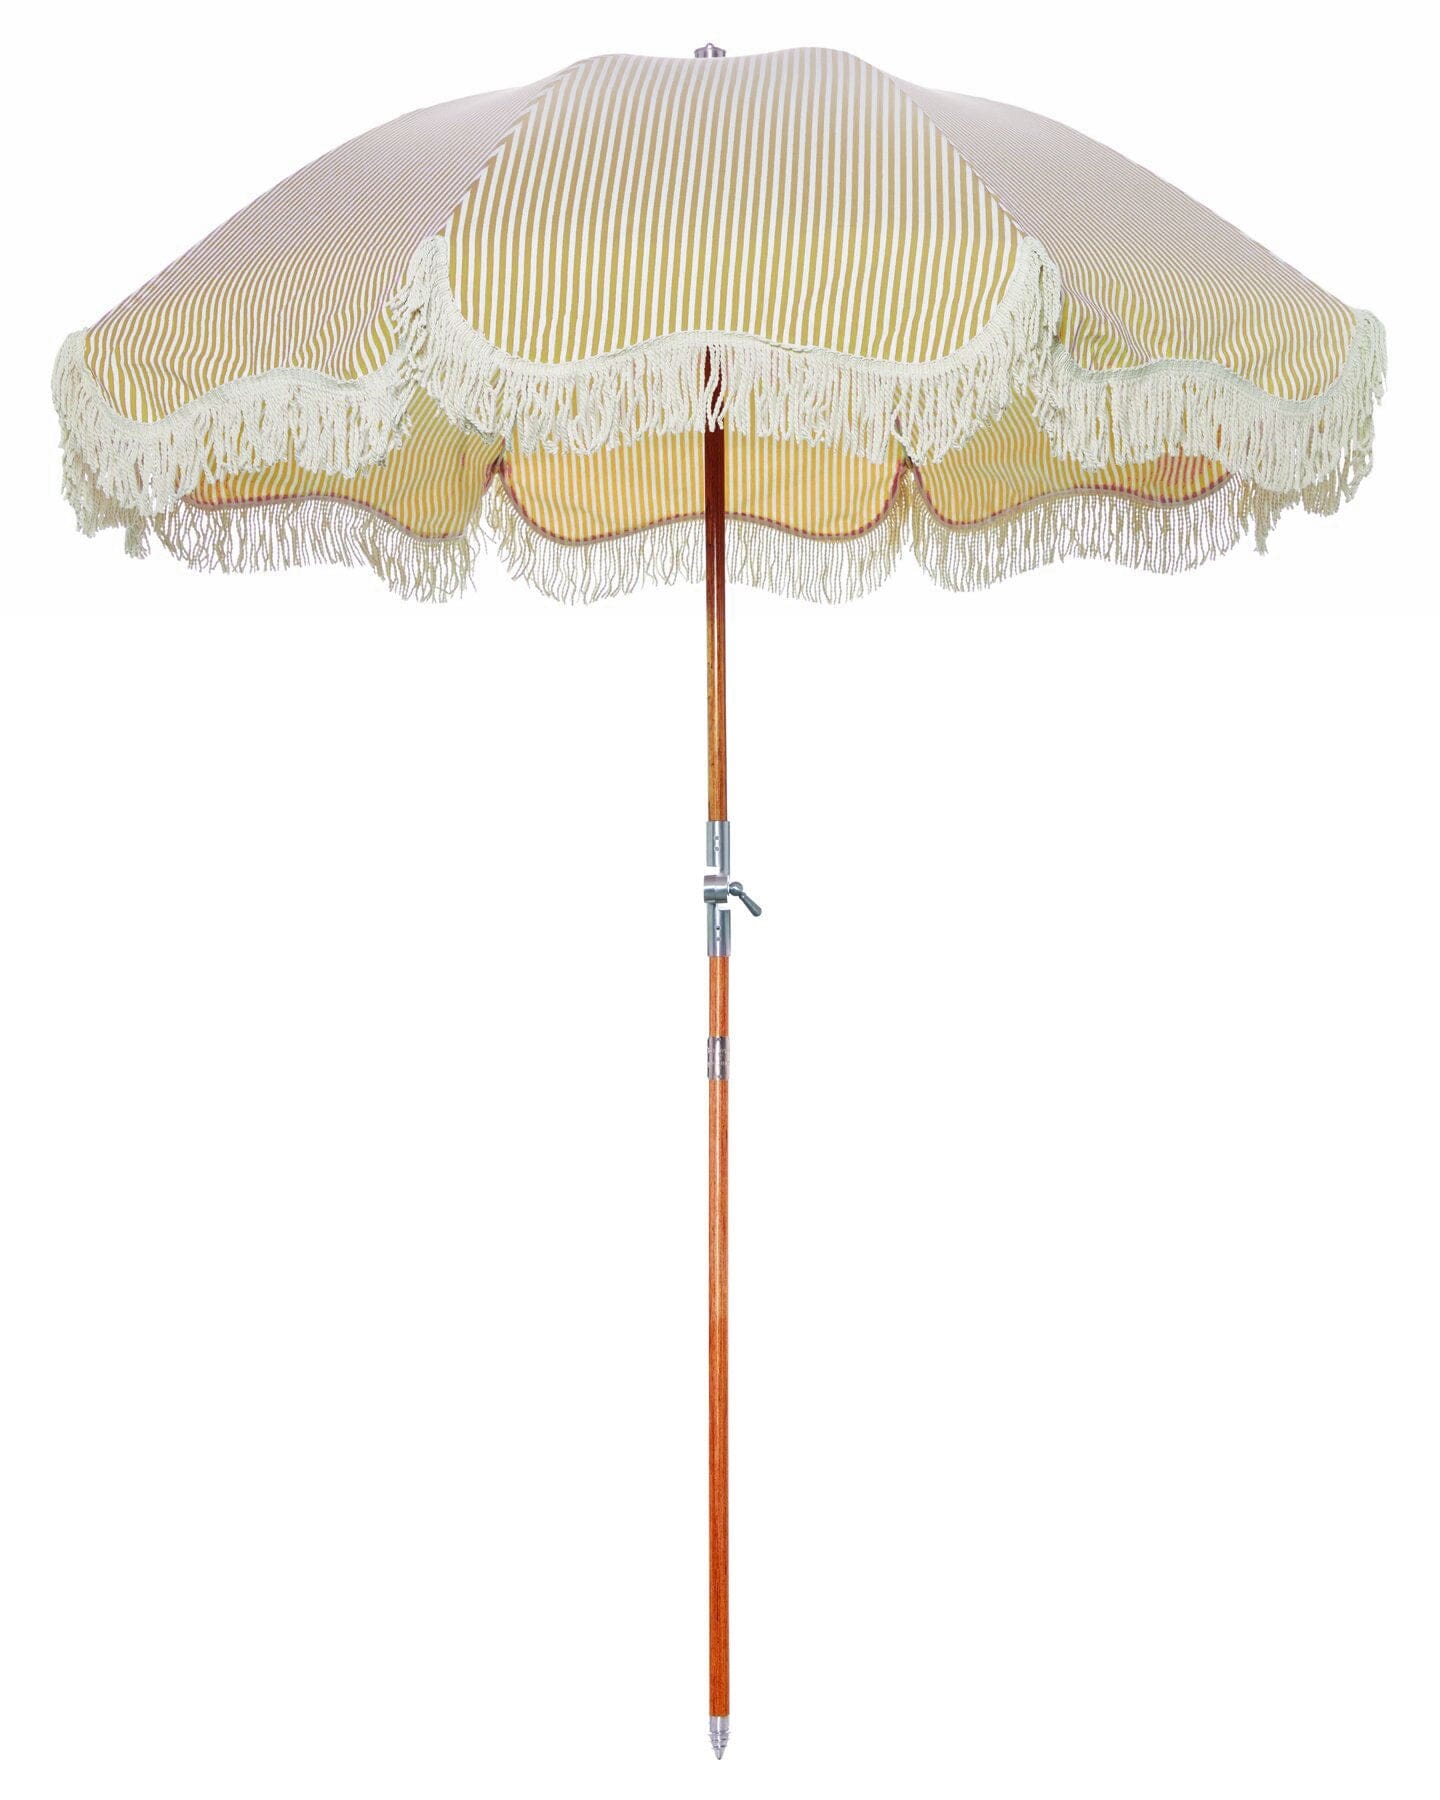 The Premium Beach Umbrella - Lauren's Gold Stripe